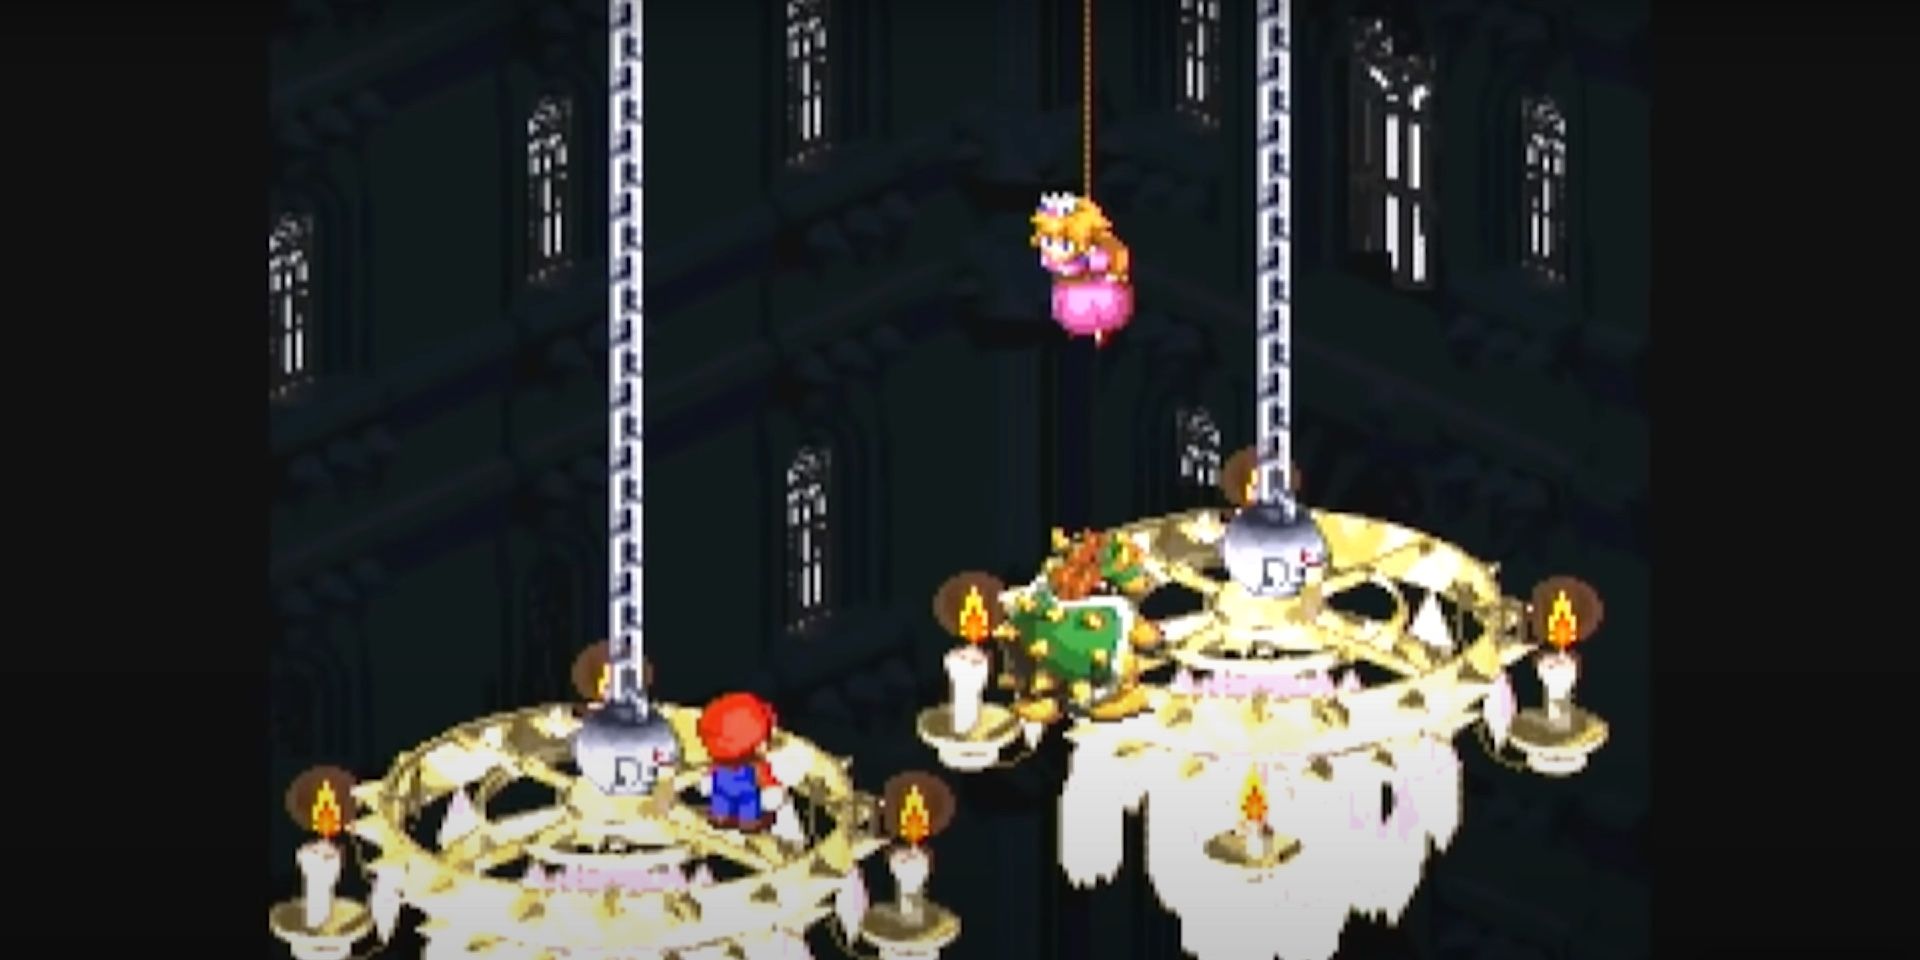 Super Mario RPG - is Luigi in the game?